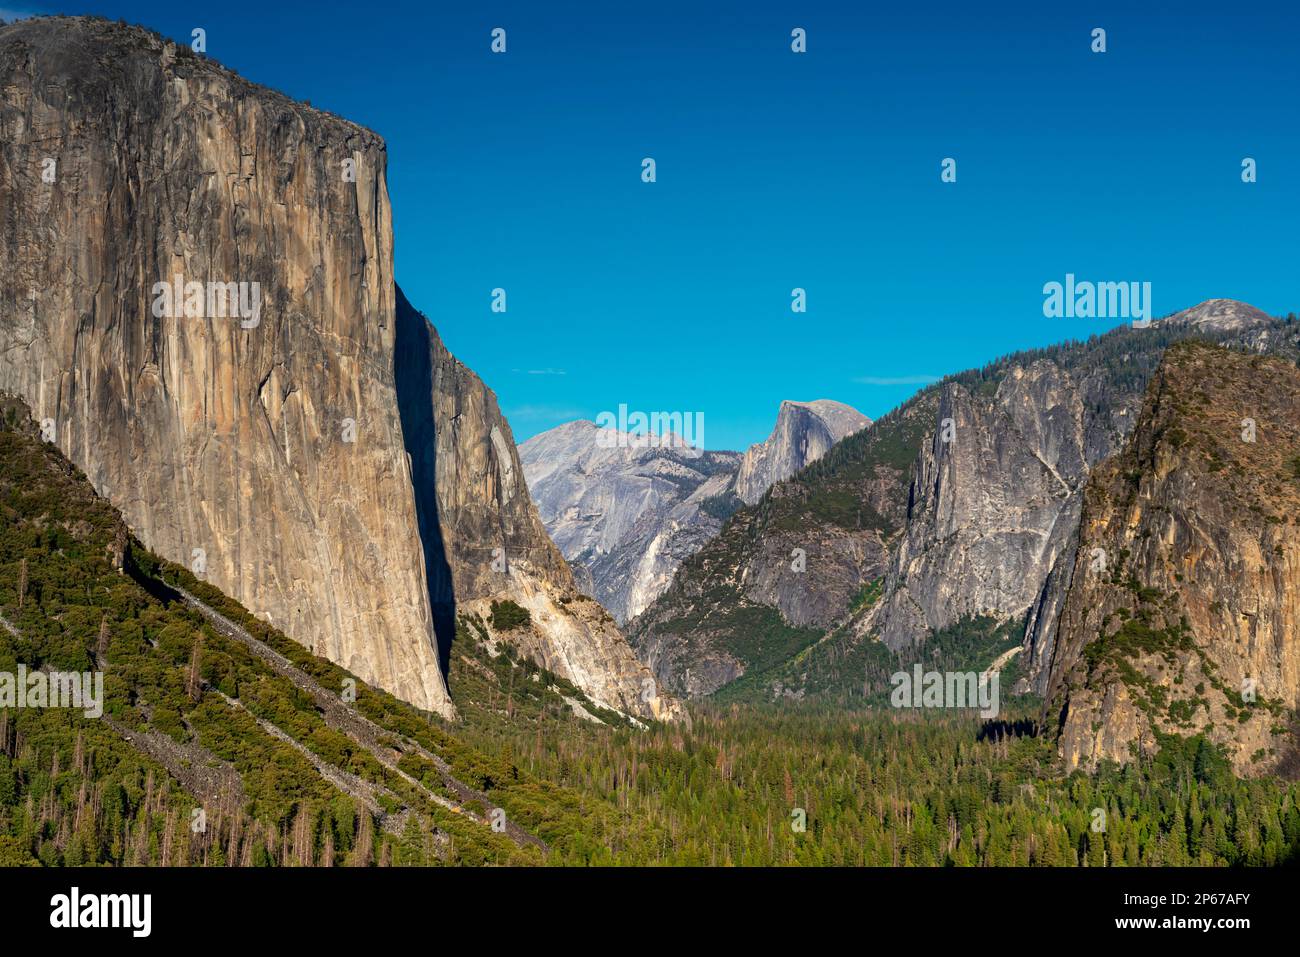 Beliebte Tunnelansicht: Yosemite Valley, El Capitan und Half Dome Granitfelsformationen, Yosemite National Park, UNESCO, Kalifornien, USA Stockfoto